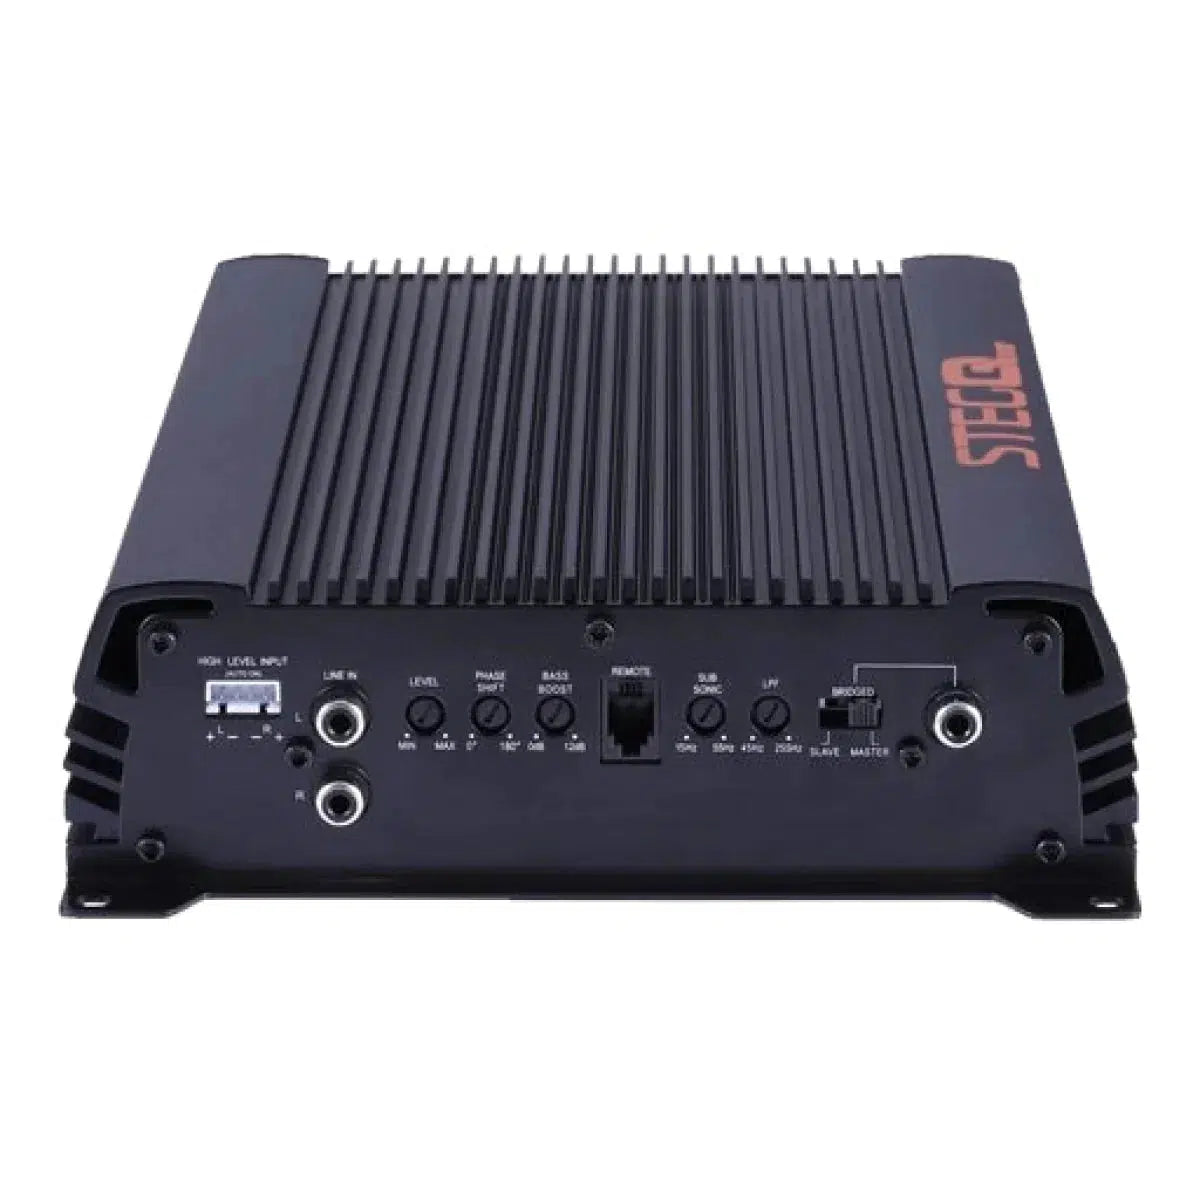 Steg-QM 500.1-1-channel amplifier-Masori.de